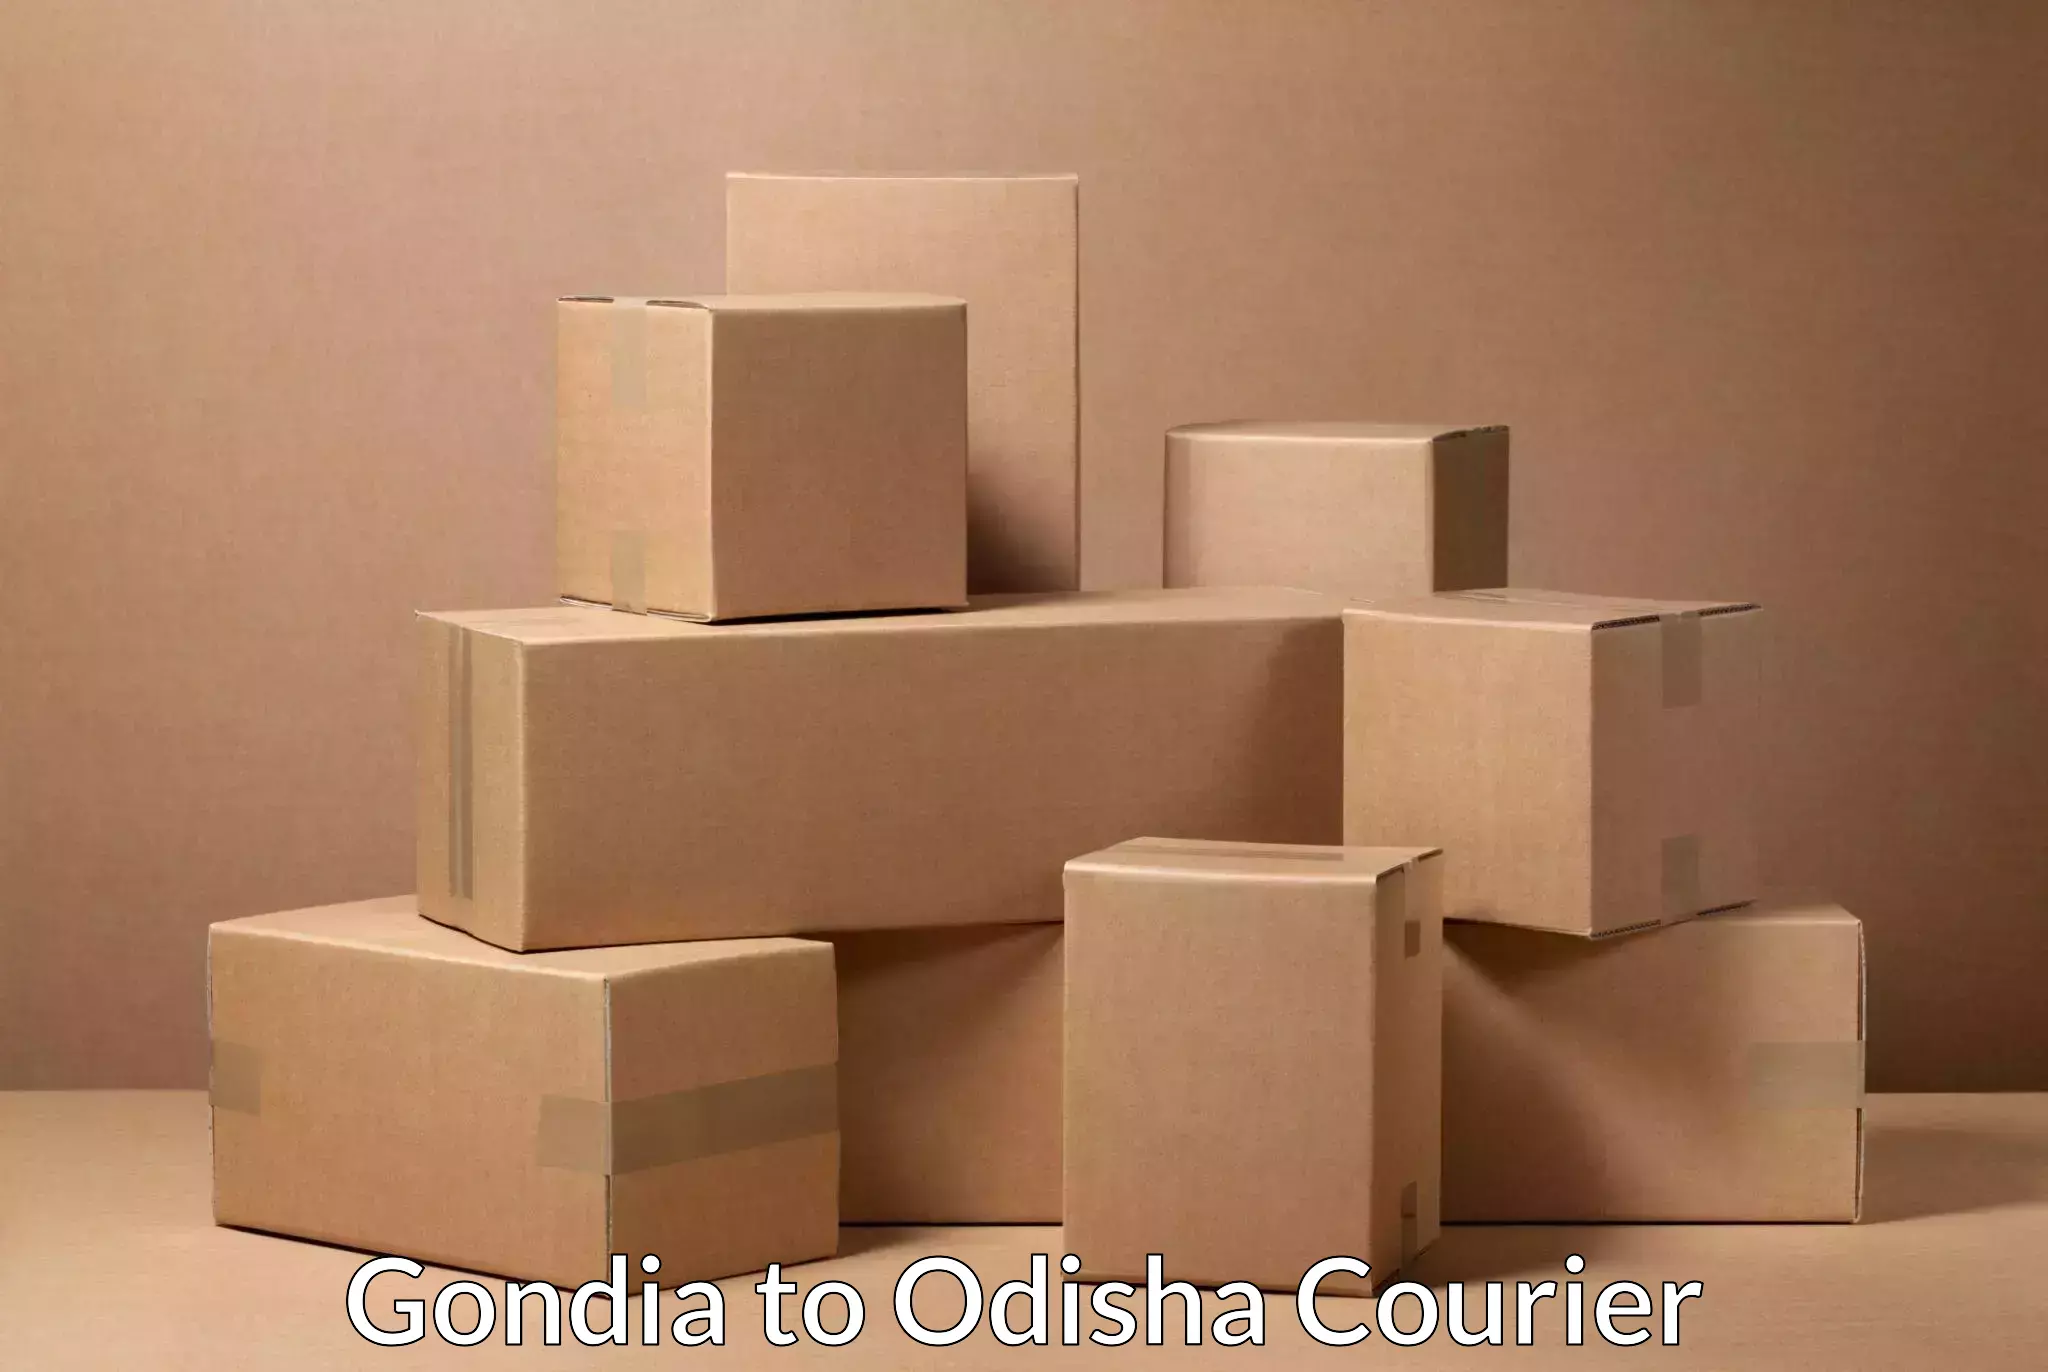 Express courier facilities Gondia to Khordha